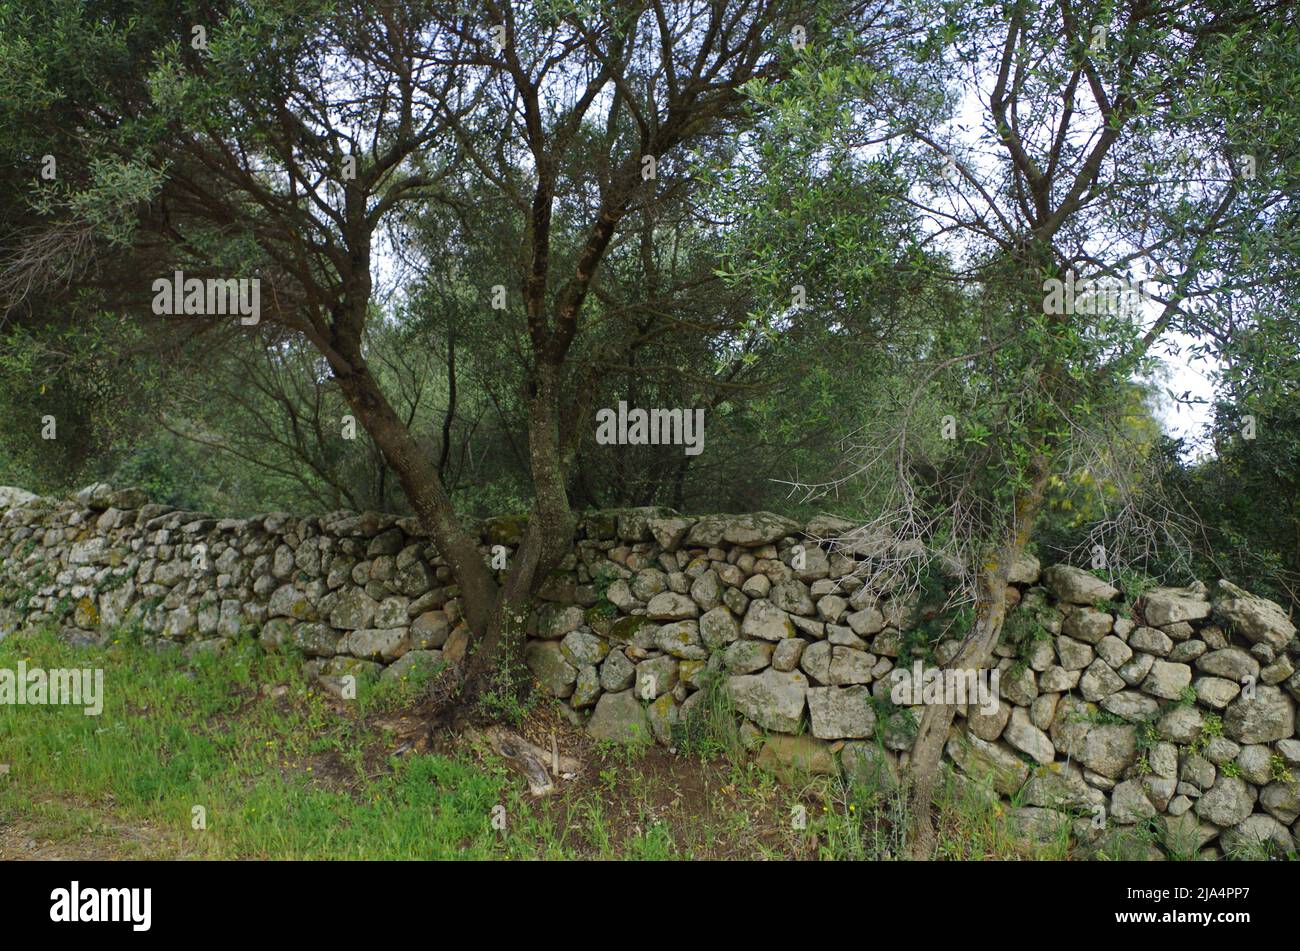 A Ston Wall on Sardinia. Stock Photo